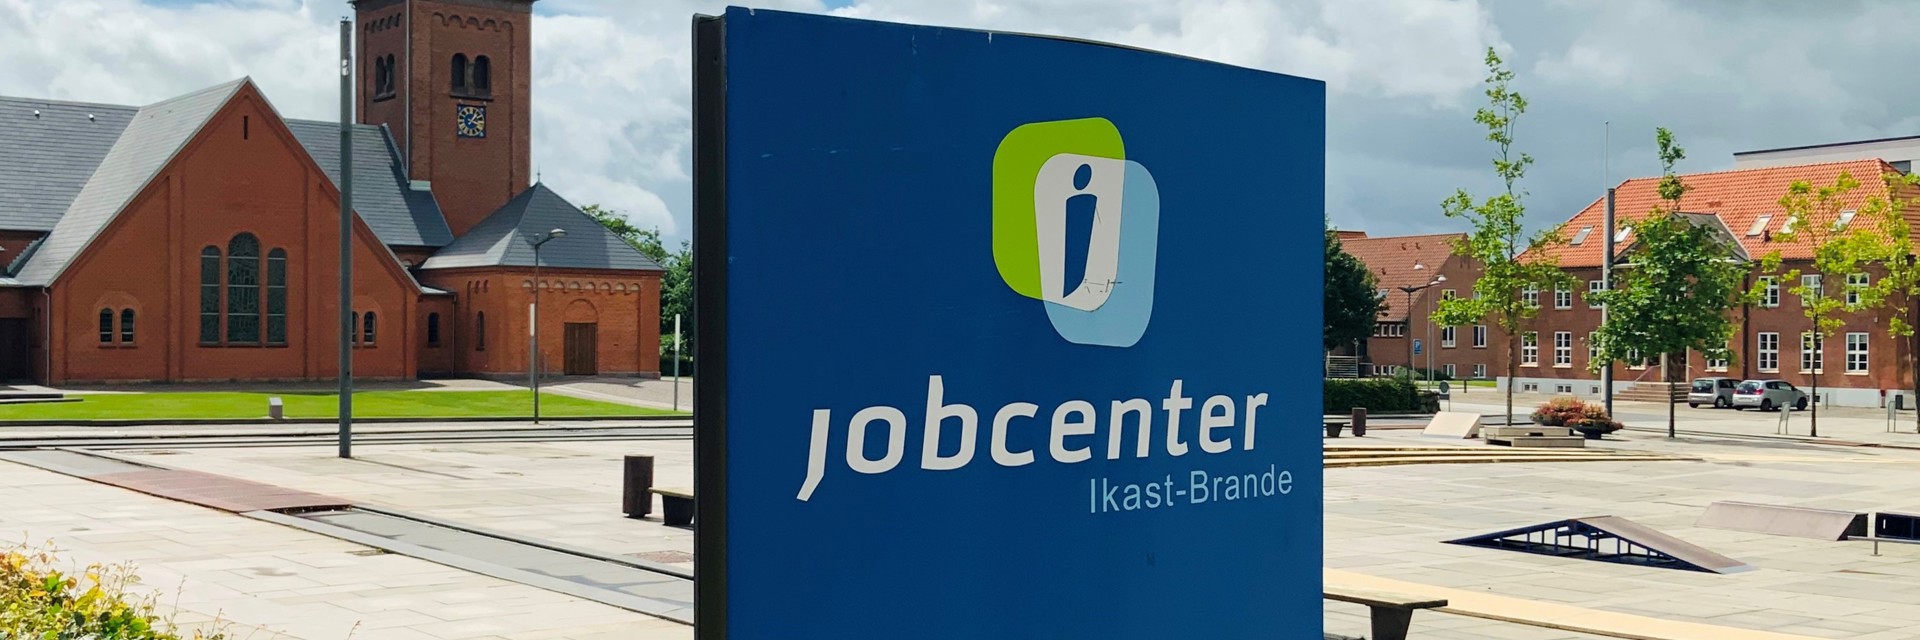 færge forsinke at lege Om Jobcentret Ikast-Brande | Ikast-Brande Kommune